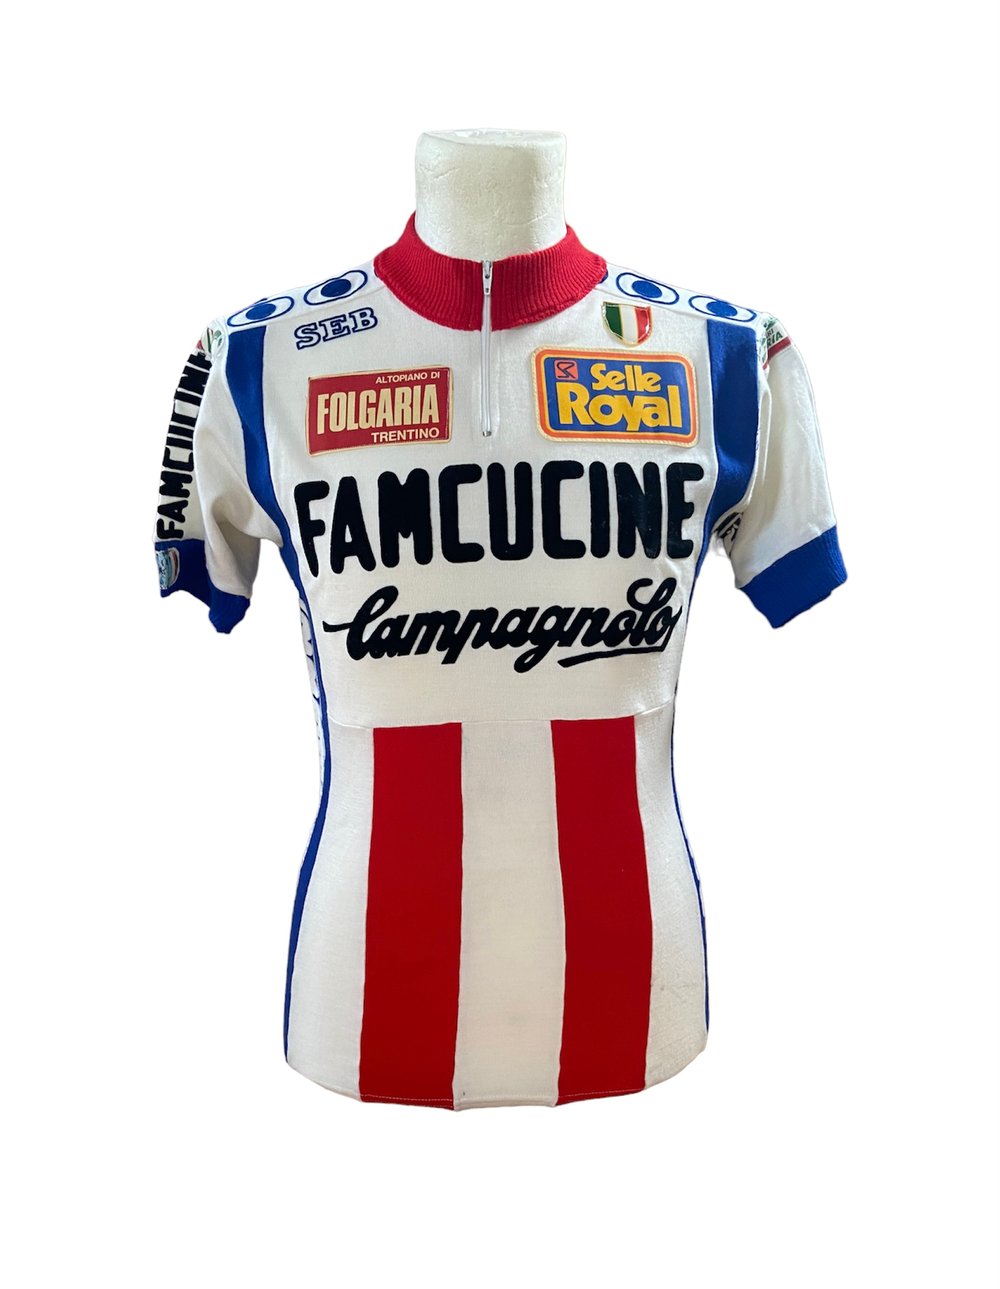 1982 - Famcucine Campagnolo - Giro d’Italia version